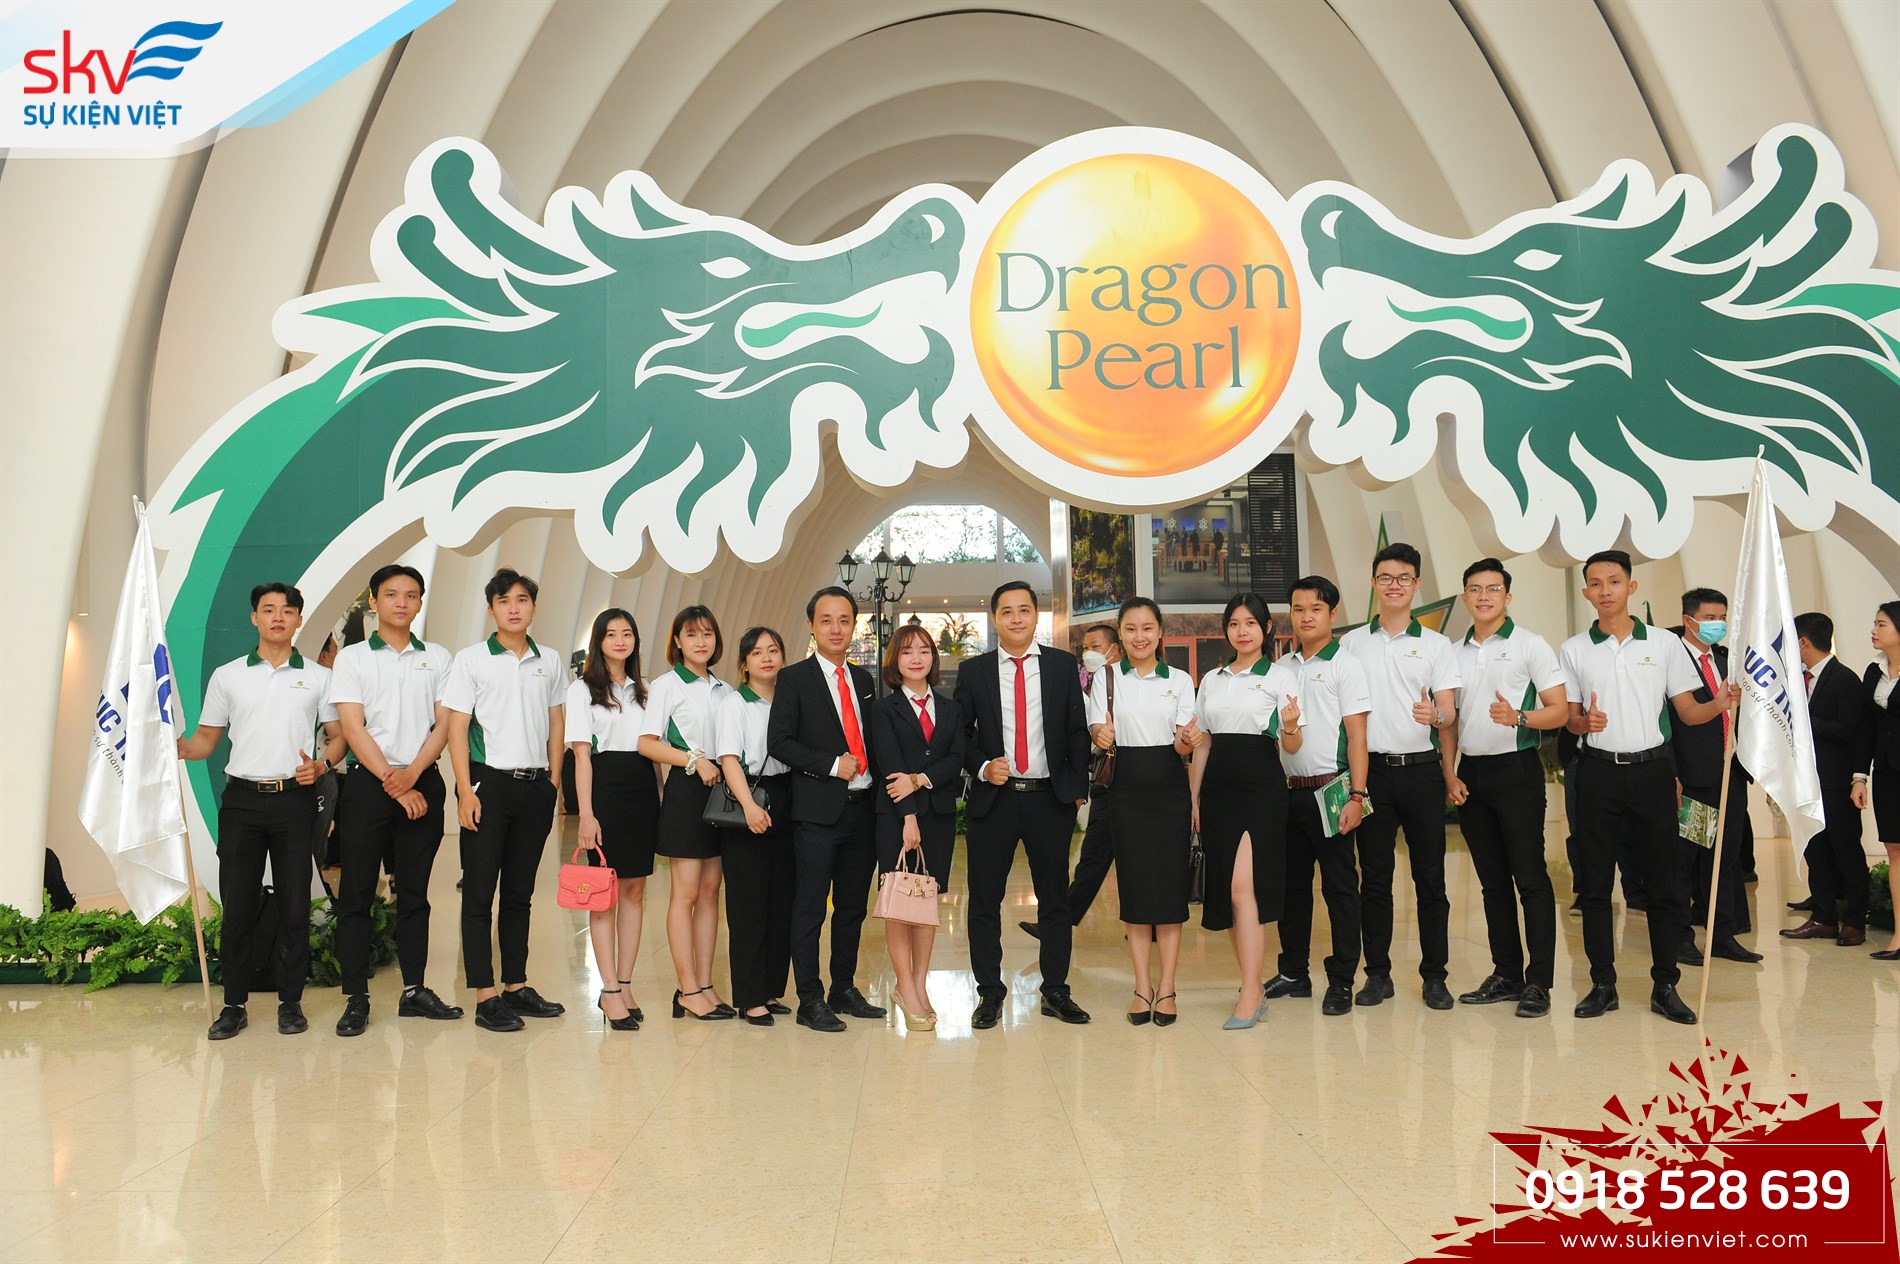 Sự Kiện Việt Tổ Chức Lễ Kick Off Dự Án Dragon Pearl